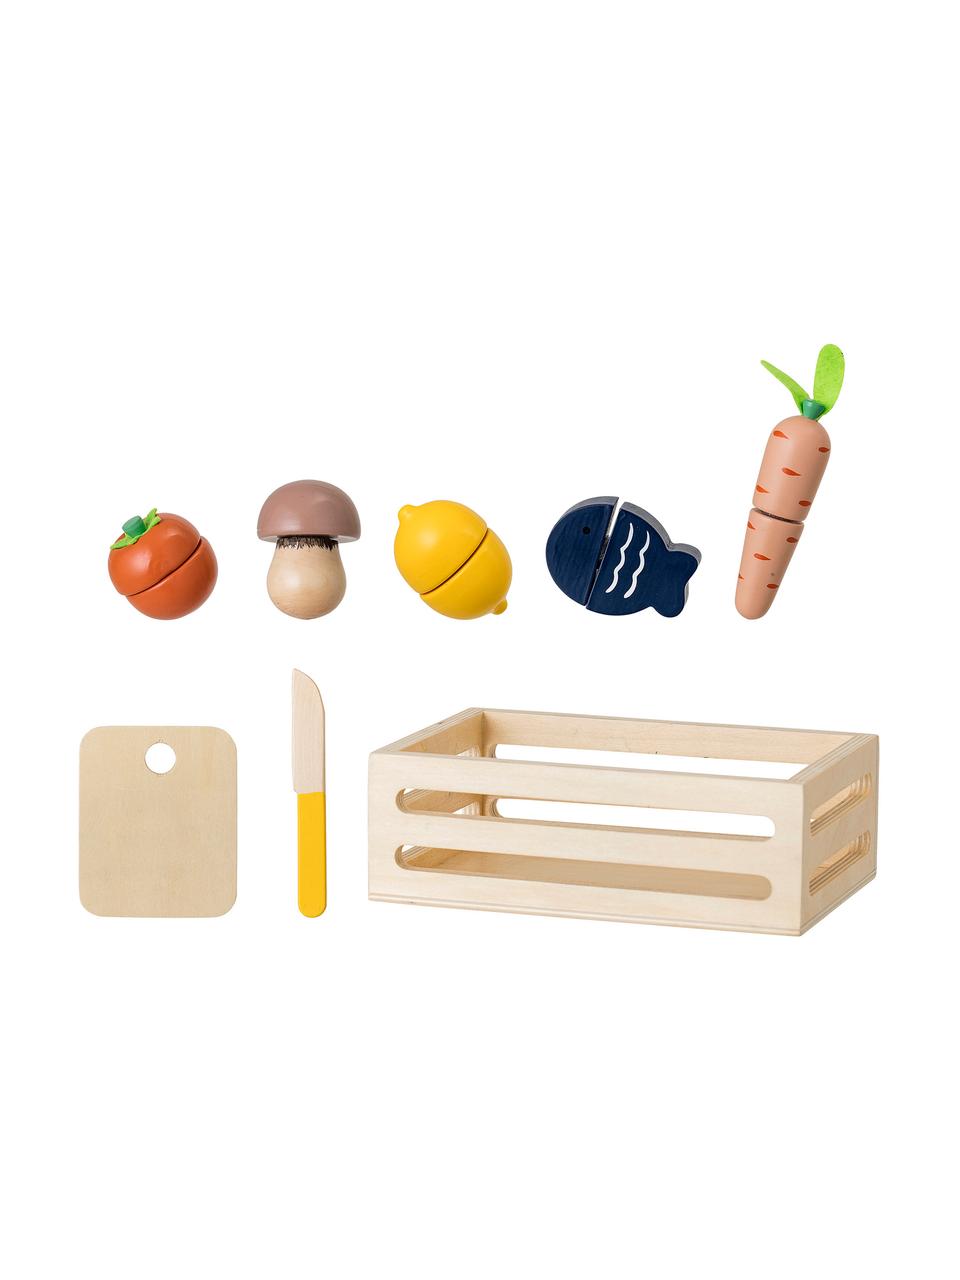 Súprava hračiek Foodbox, 8 dielov, Vrstvené drevo, MDF-doska strednej hustoty. potiahnutá, Viacfarebná, Rôzne veľkosti